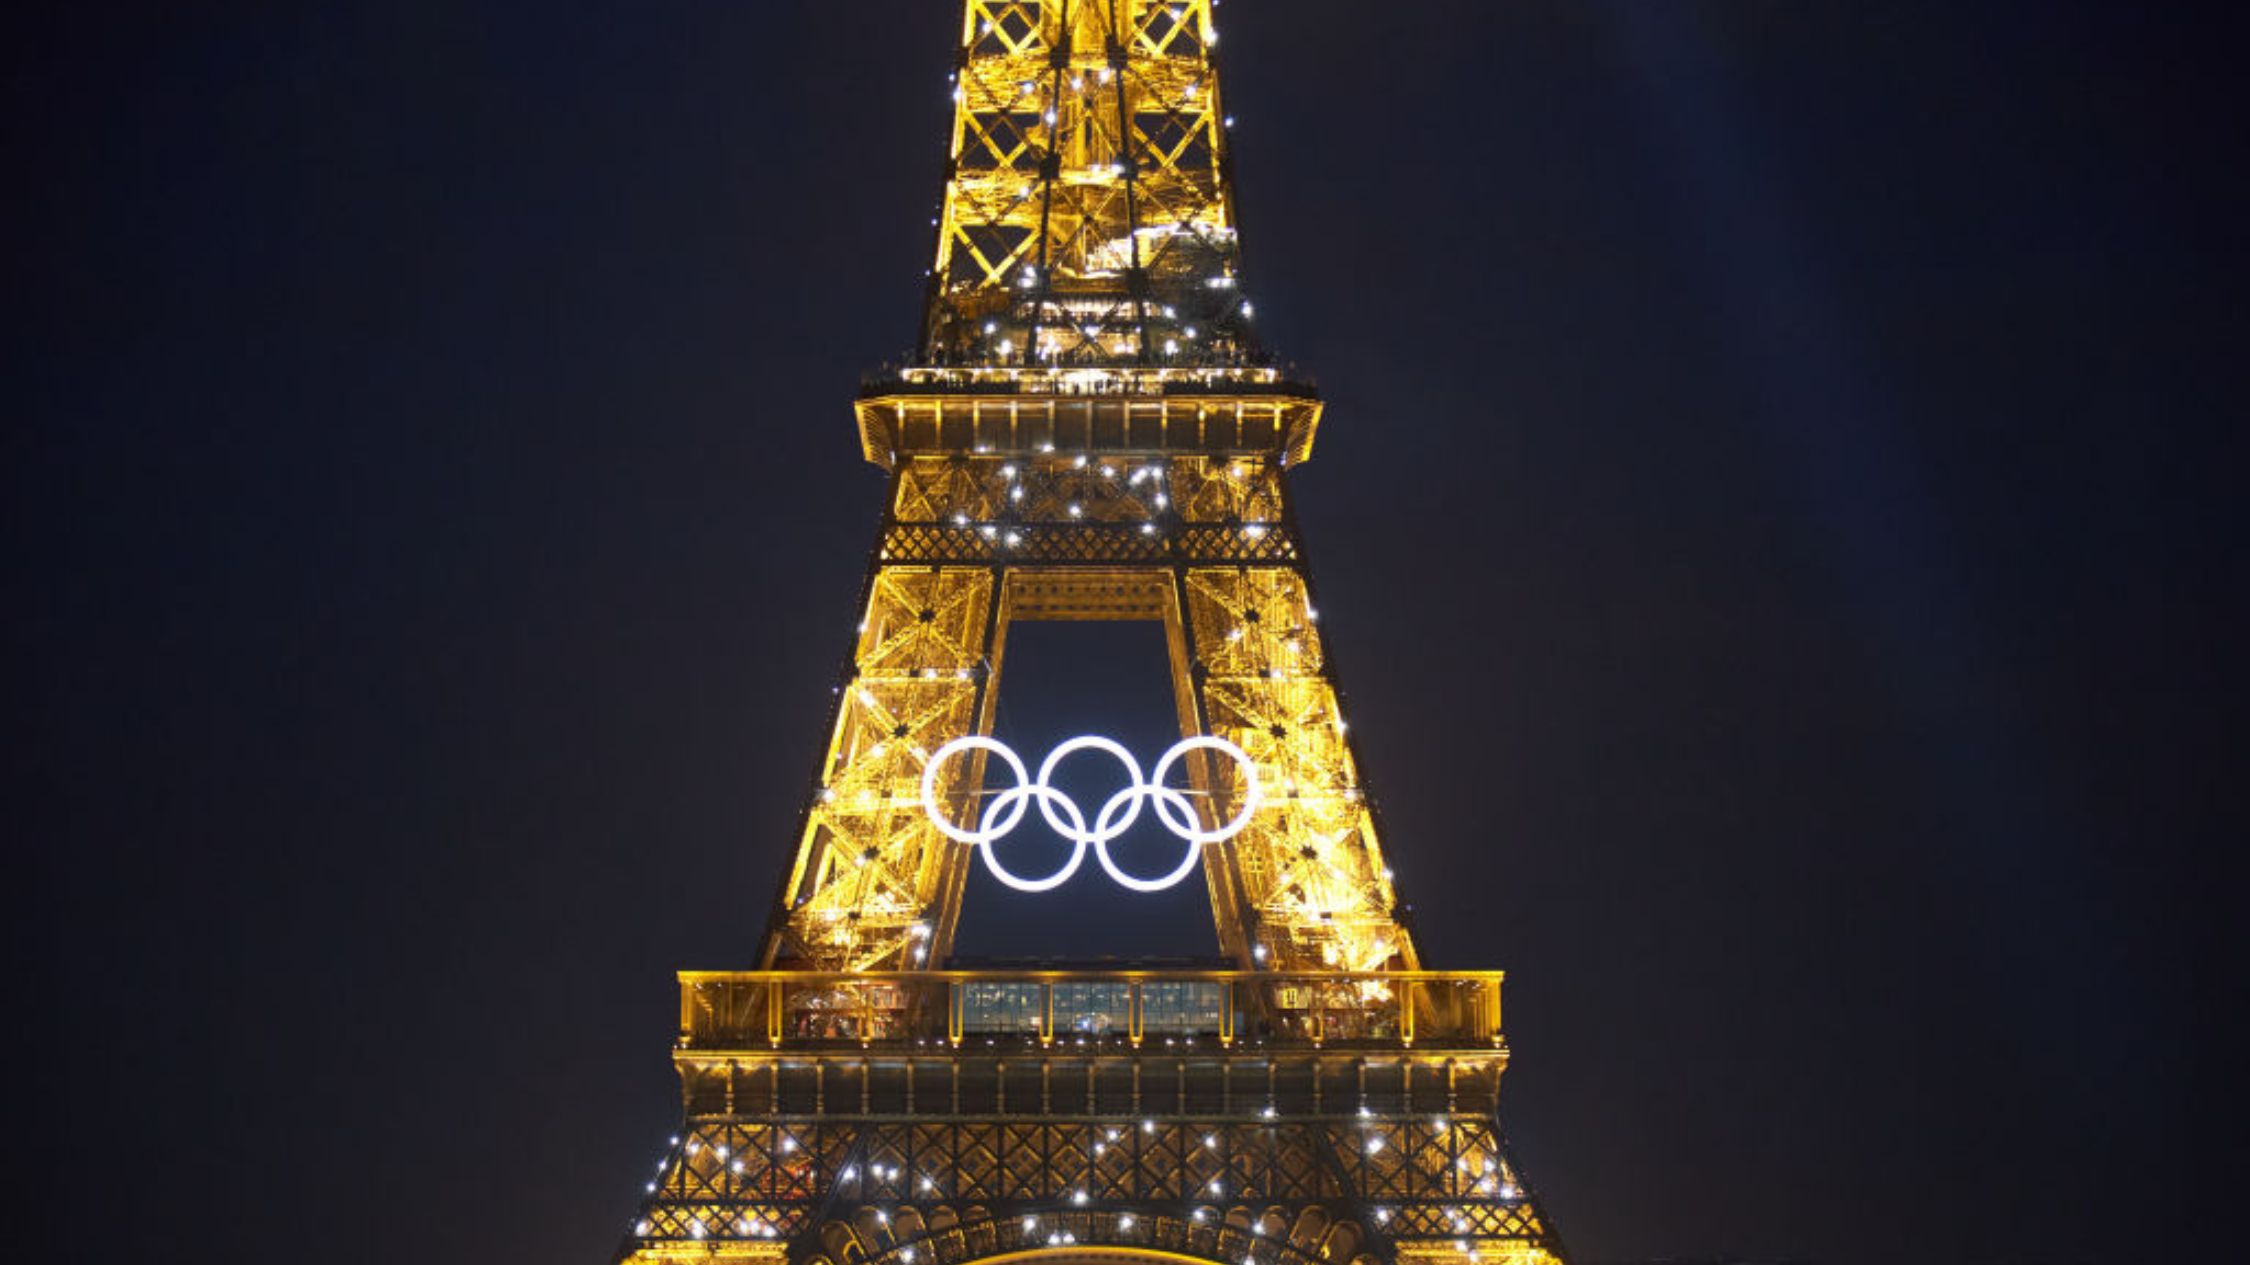 Calendario de los Juegos Olímpicos de París 2024: horarios, competiciones y fechas